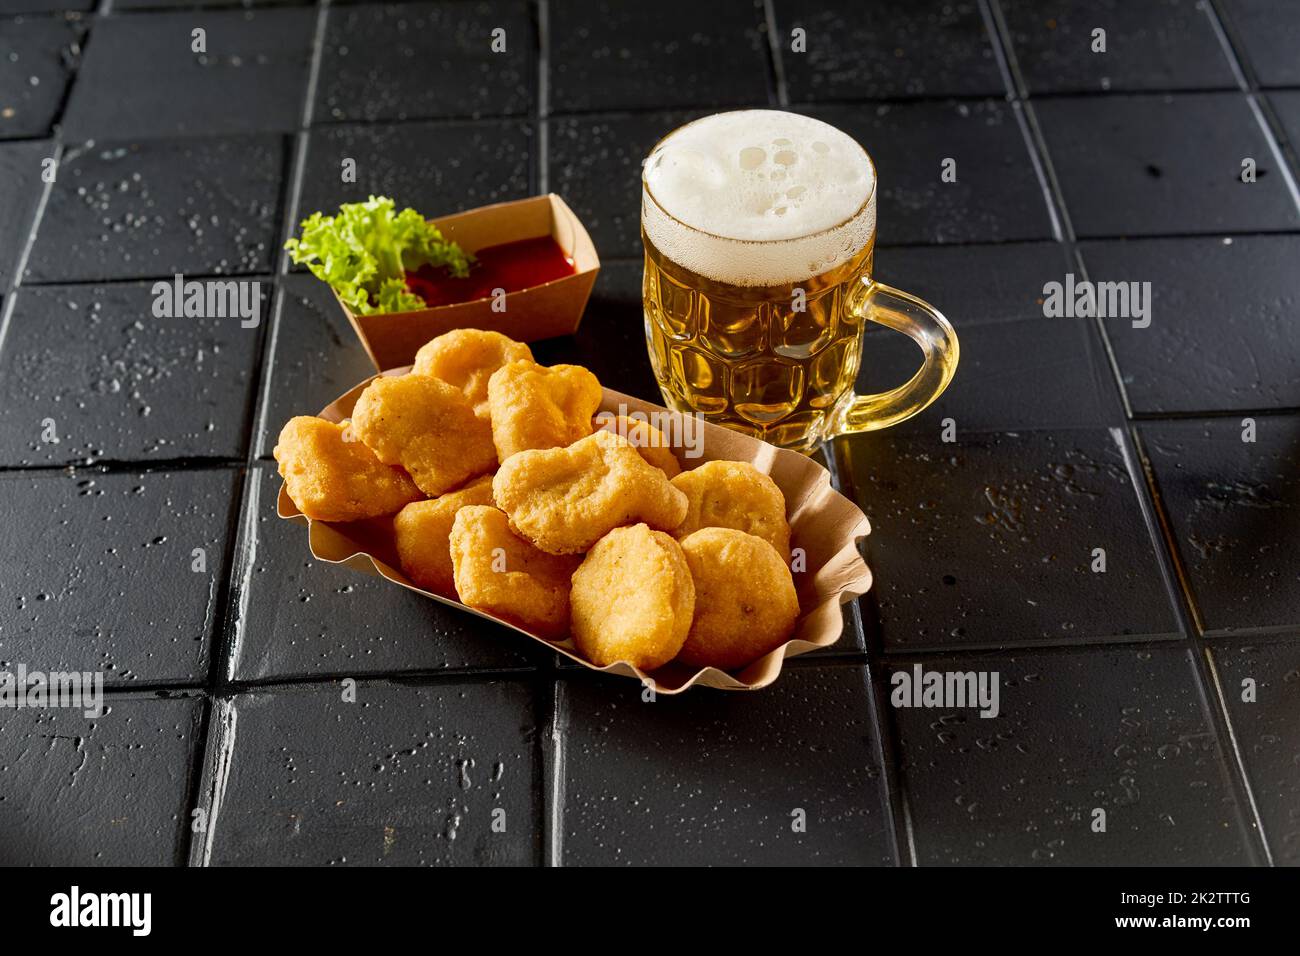 Ein Glas Bier neben dem Teller mit Chicken Nuggets auf dem schwarzen Tisch Stockfoto